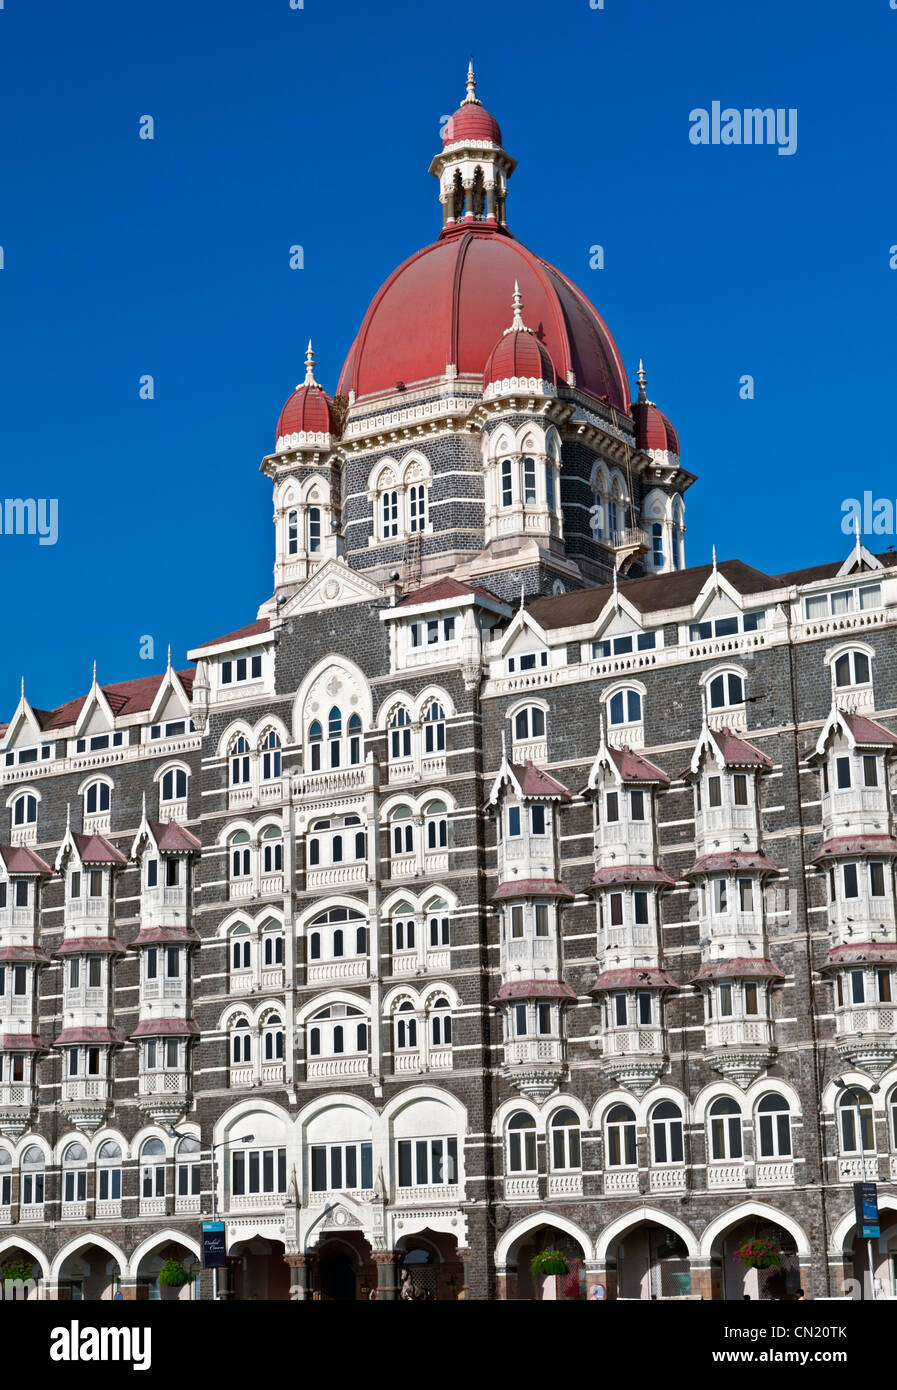 Hôtel Taj Mahal Palace Mumbai Bombay Inde Colaba Banque D'Images